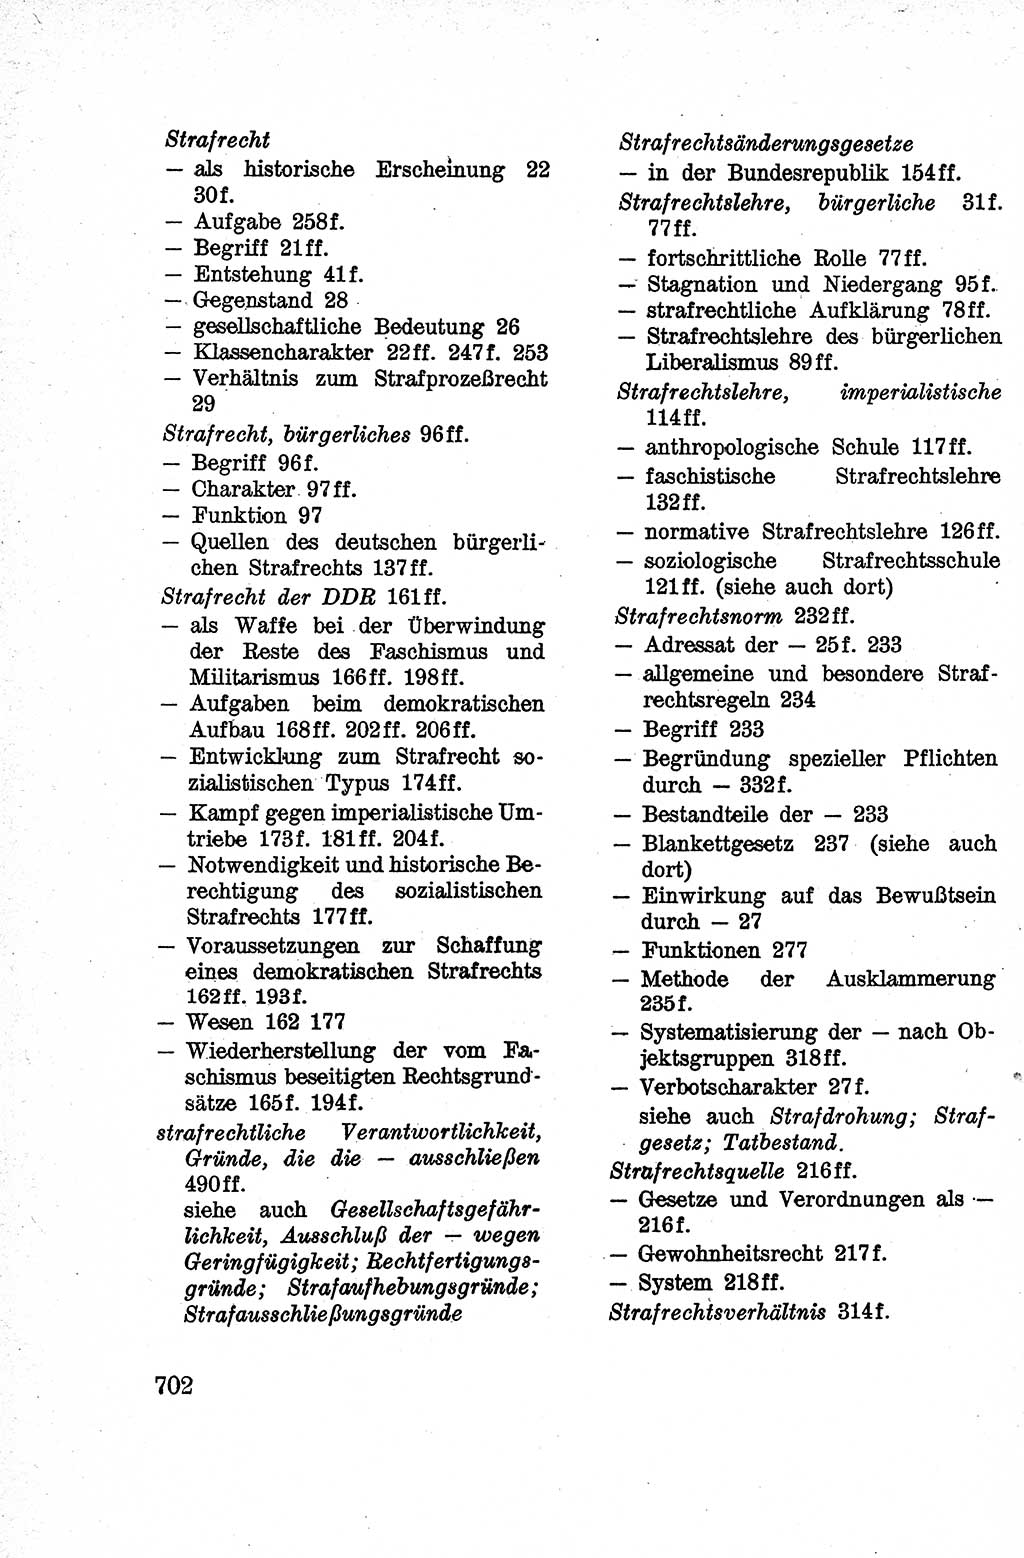 Lehrbuch des Strafrechts der Deutschen Demokratischen Republik (DDR), Allgemeiner Teil 1959, Seite 702 (Lb. Strafr. DDR AT 1959, S. 702)